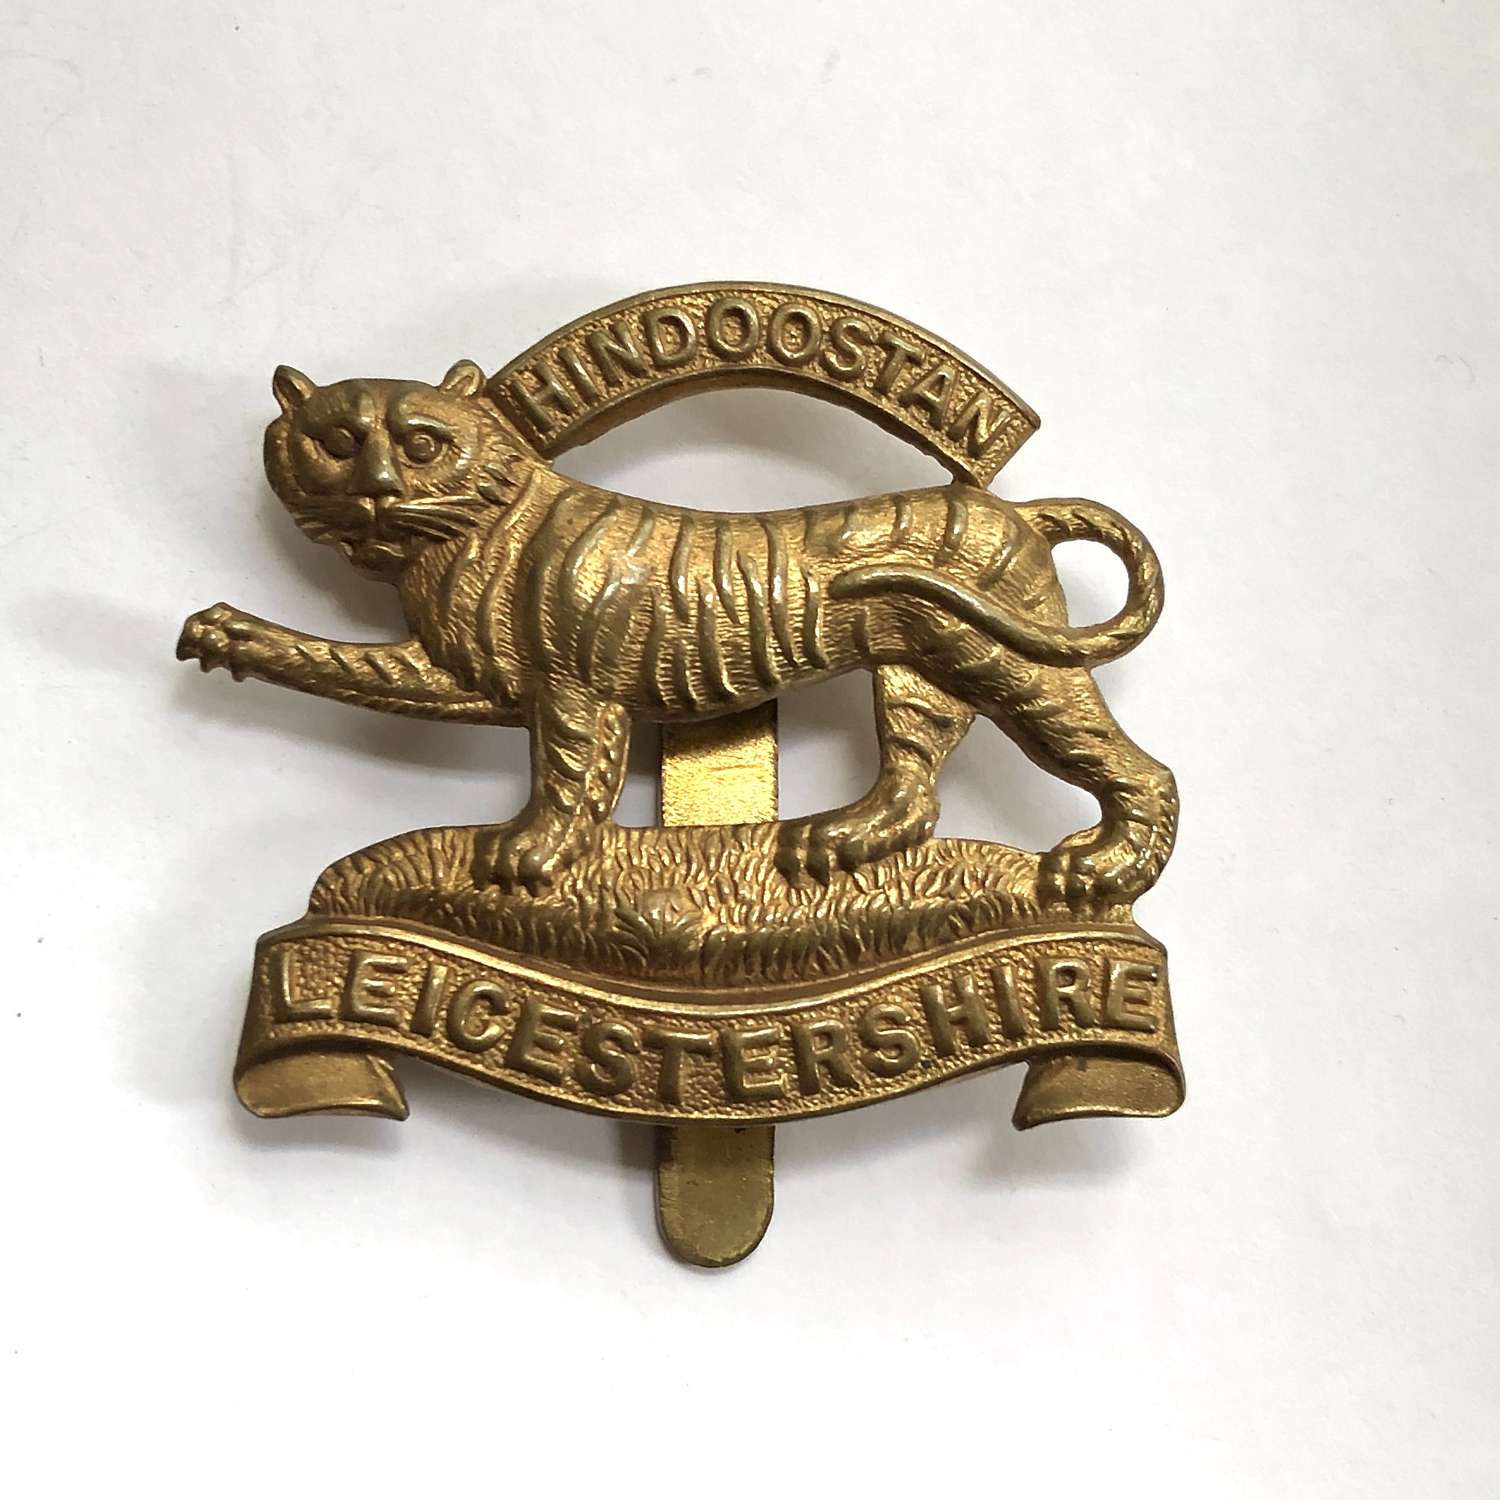 Leicestershire Regiment brass economy cap badge circa 1916-18